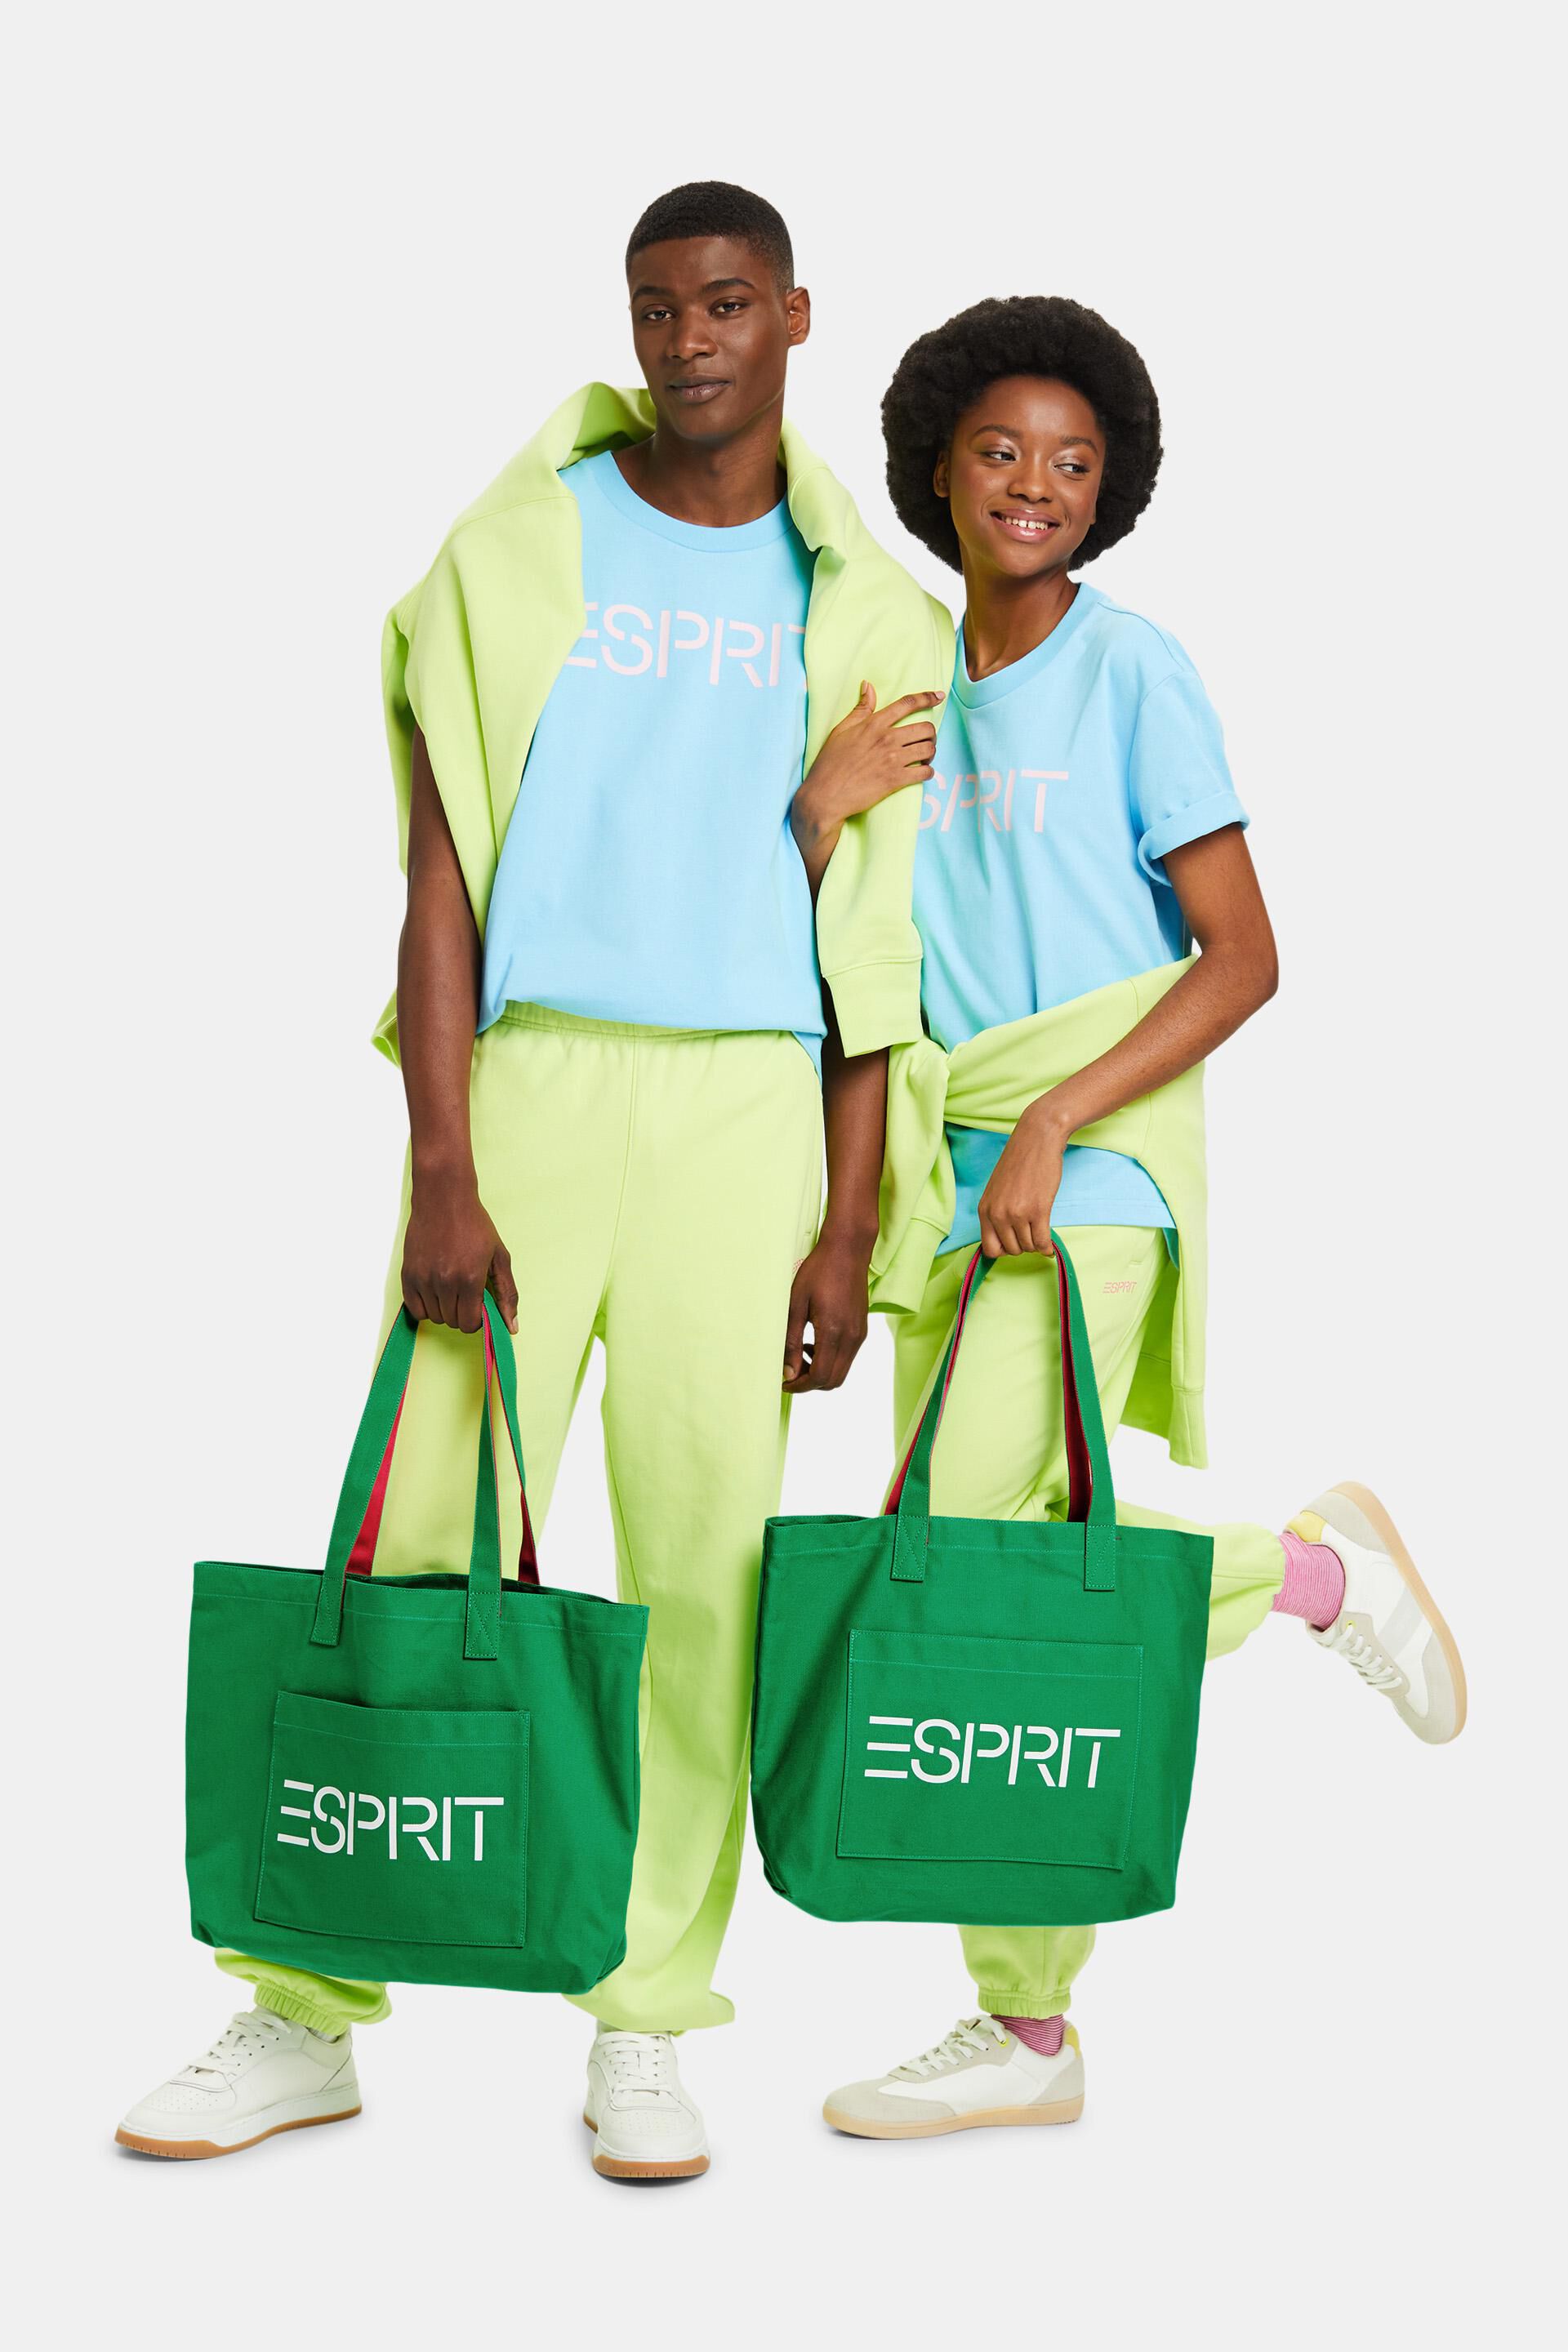 ESPRIT - Logo Canvas Tote Bag at our online shop